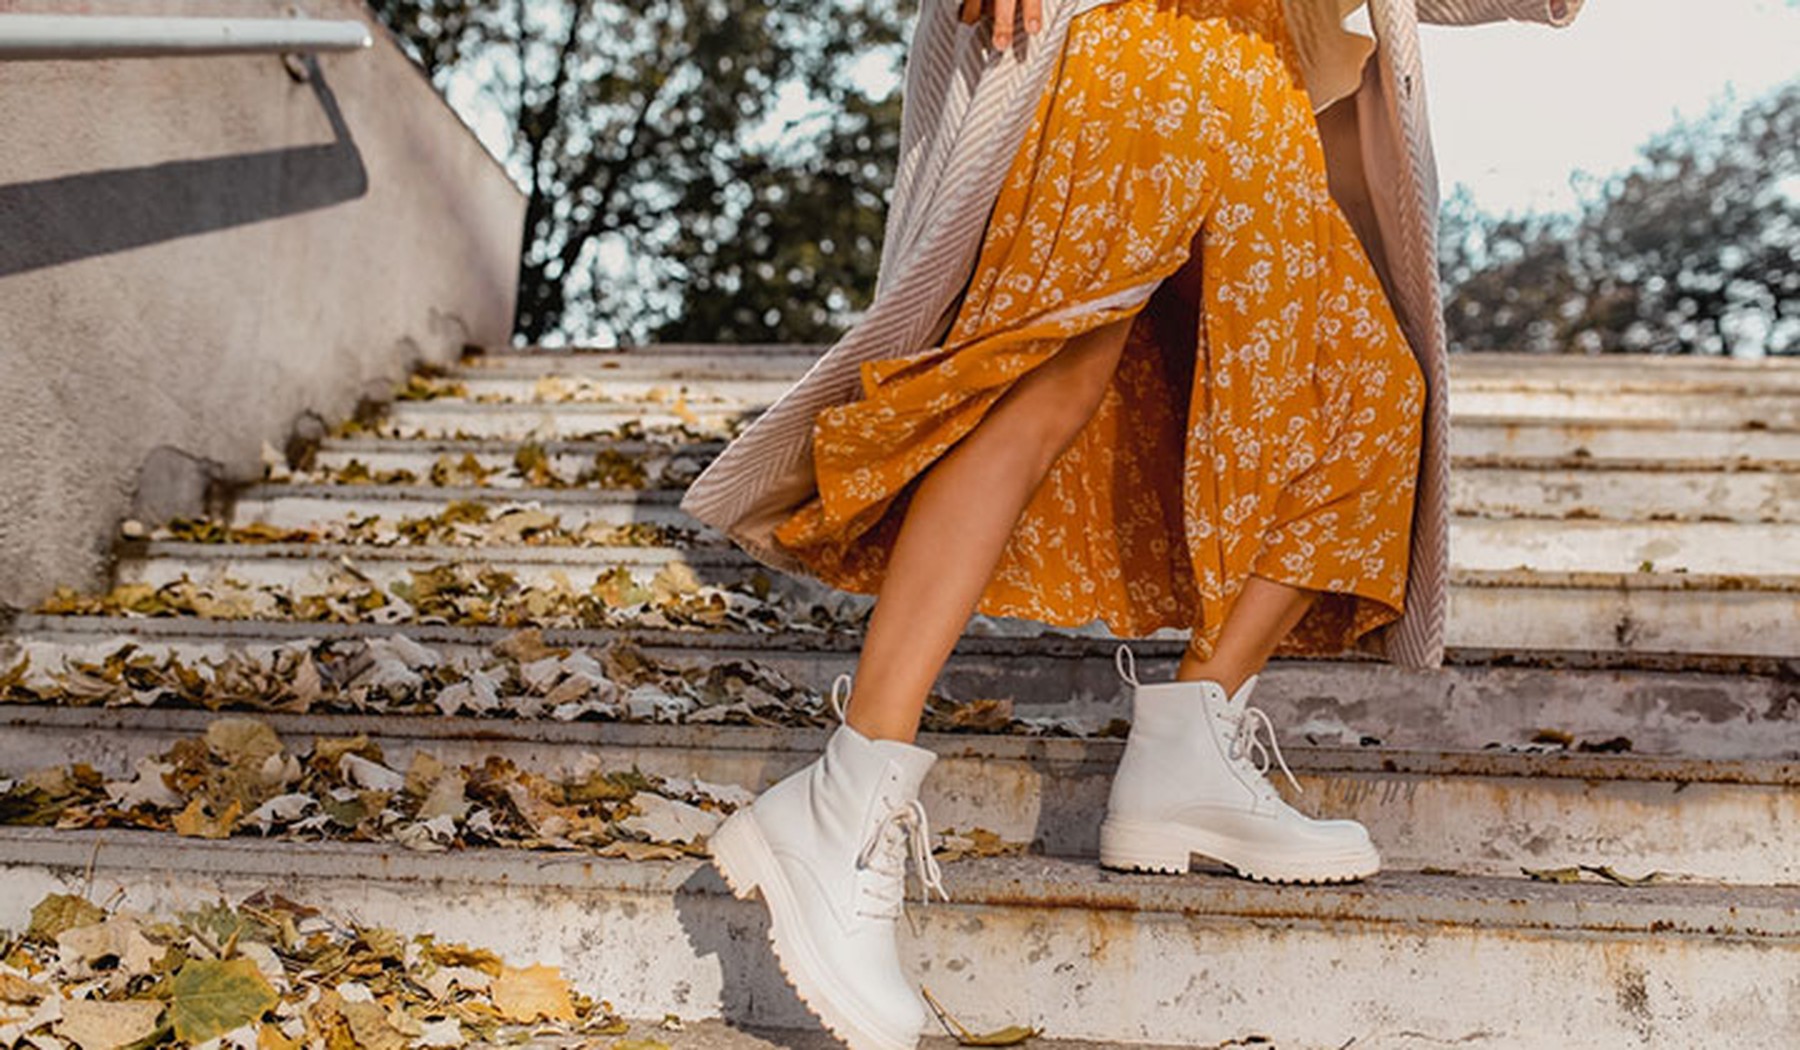 Parte de abajo de una mujer subiendo unas escaleras con una falda de flores naranja y botines blancos